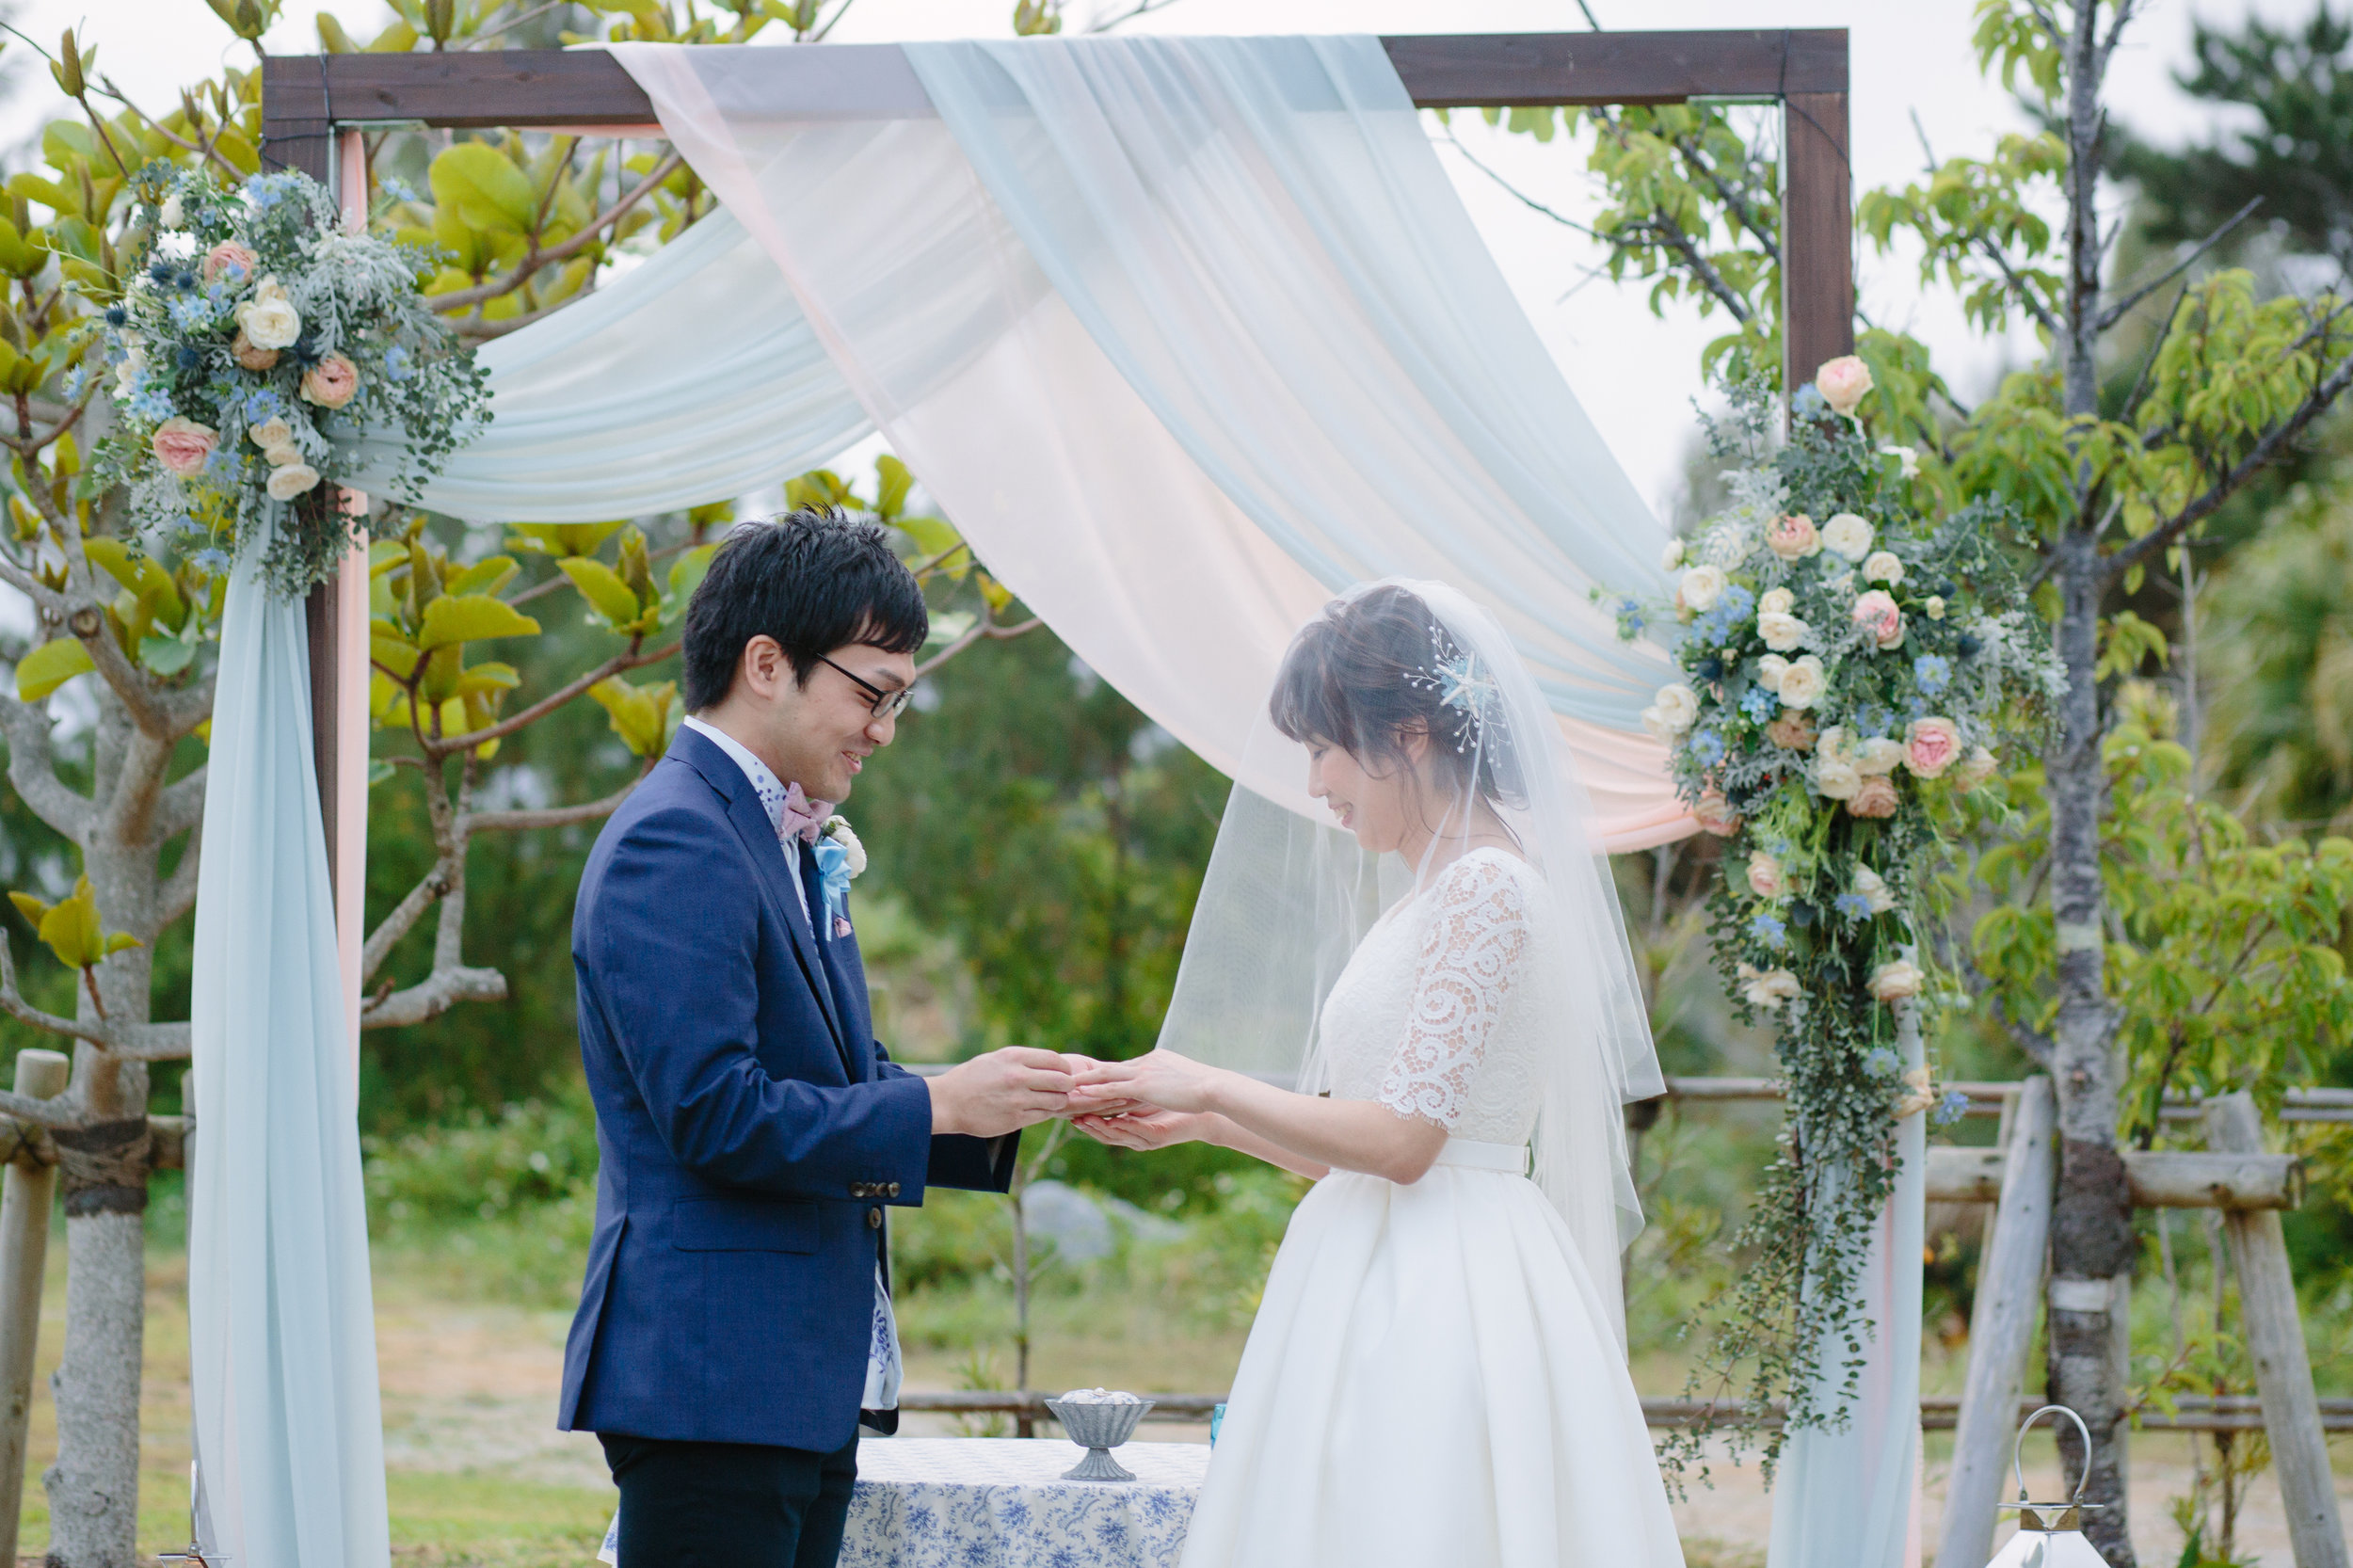  沖縄結婚式 | 出張カメラマン | Koji Nishida Photography | Produced by Belvedere | Belvedere Wedding 